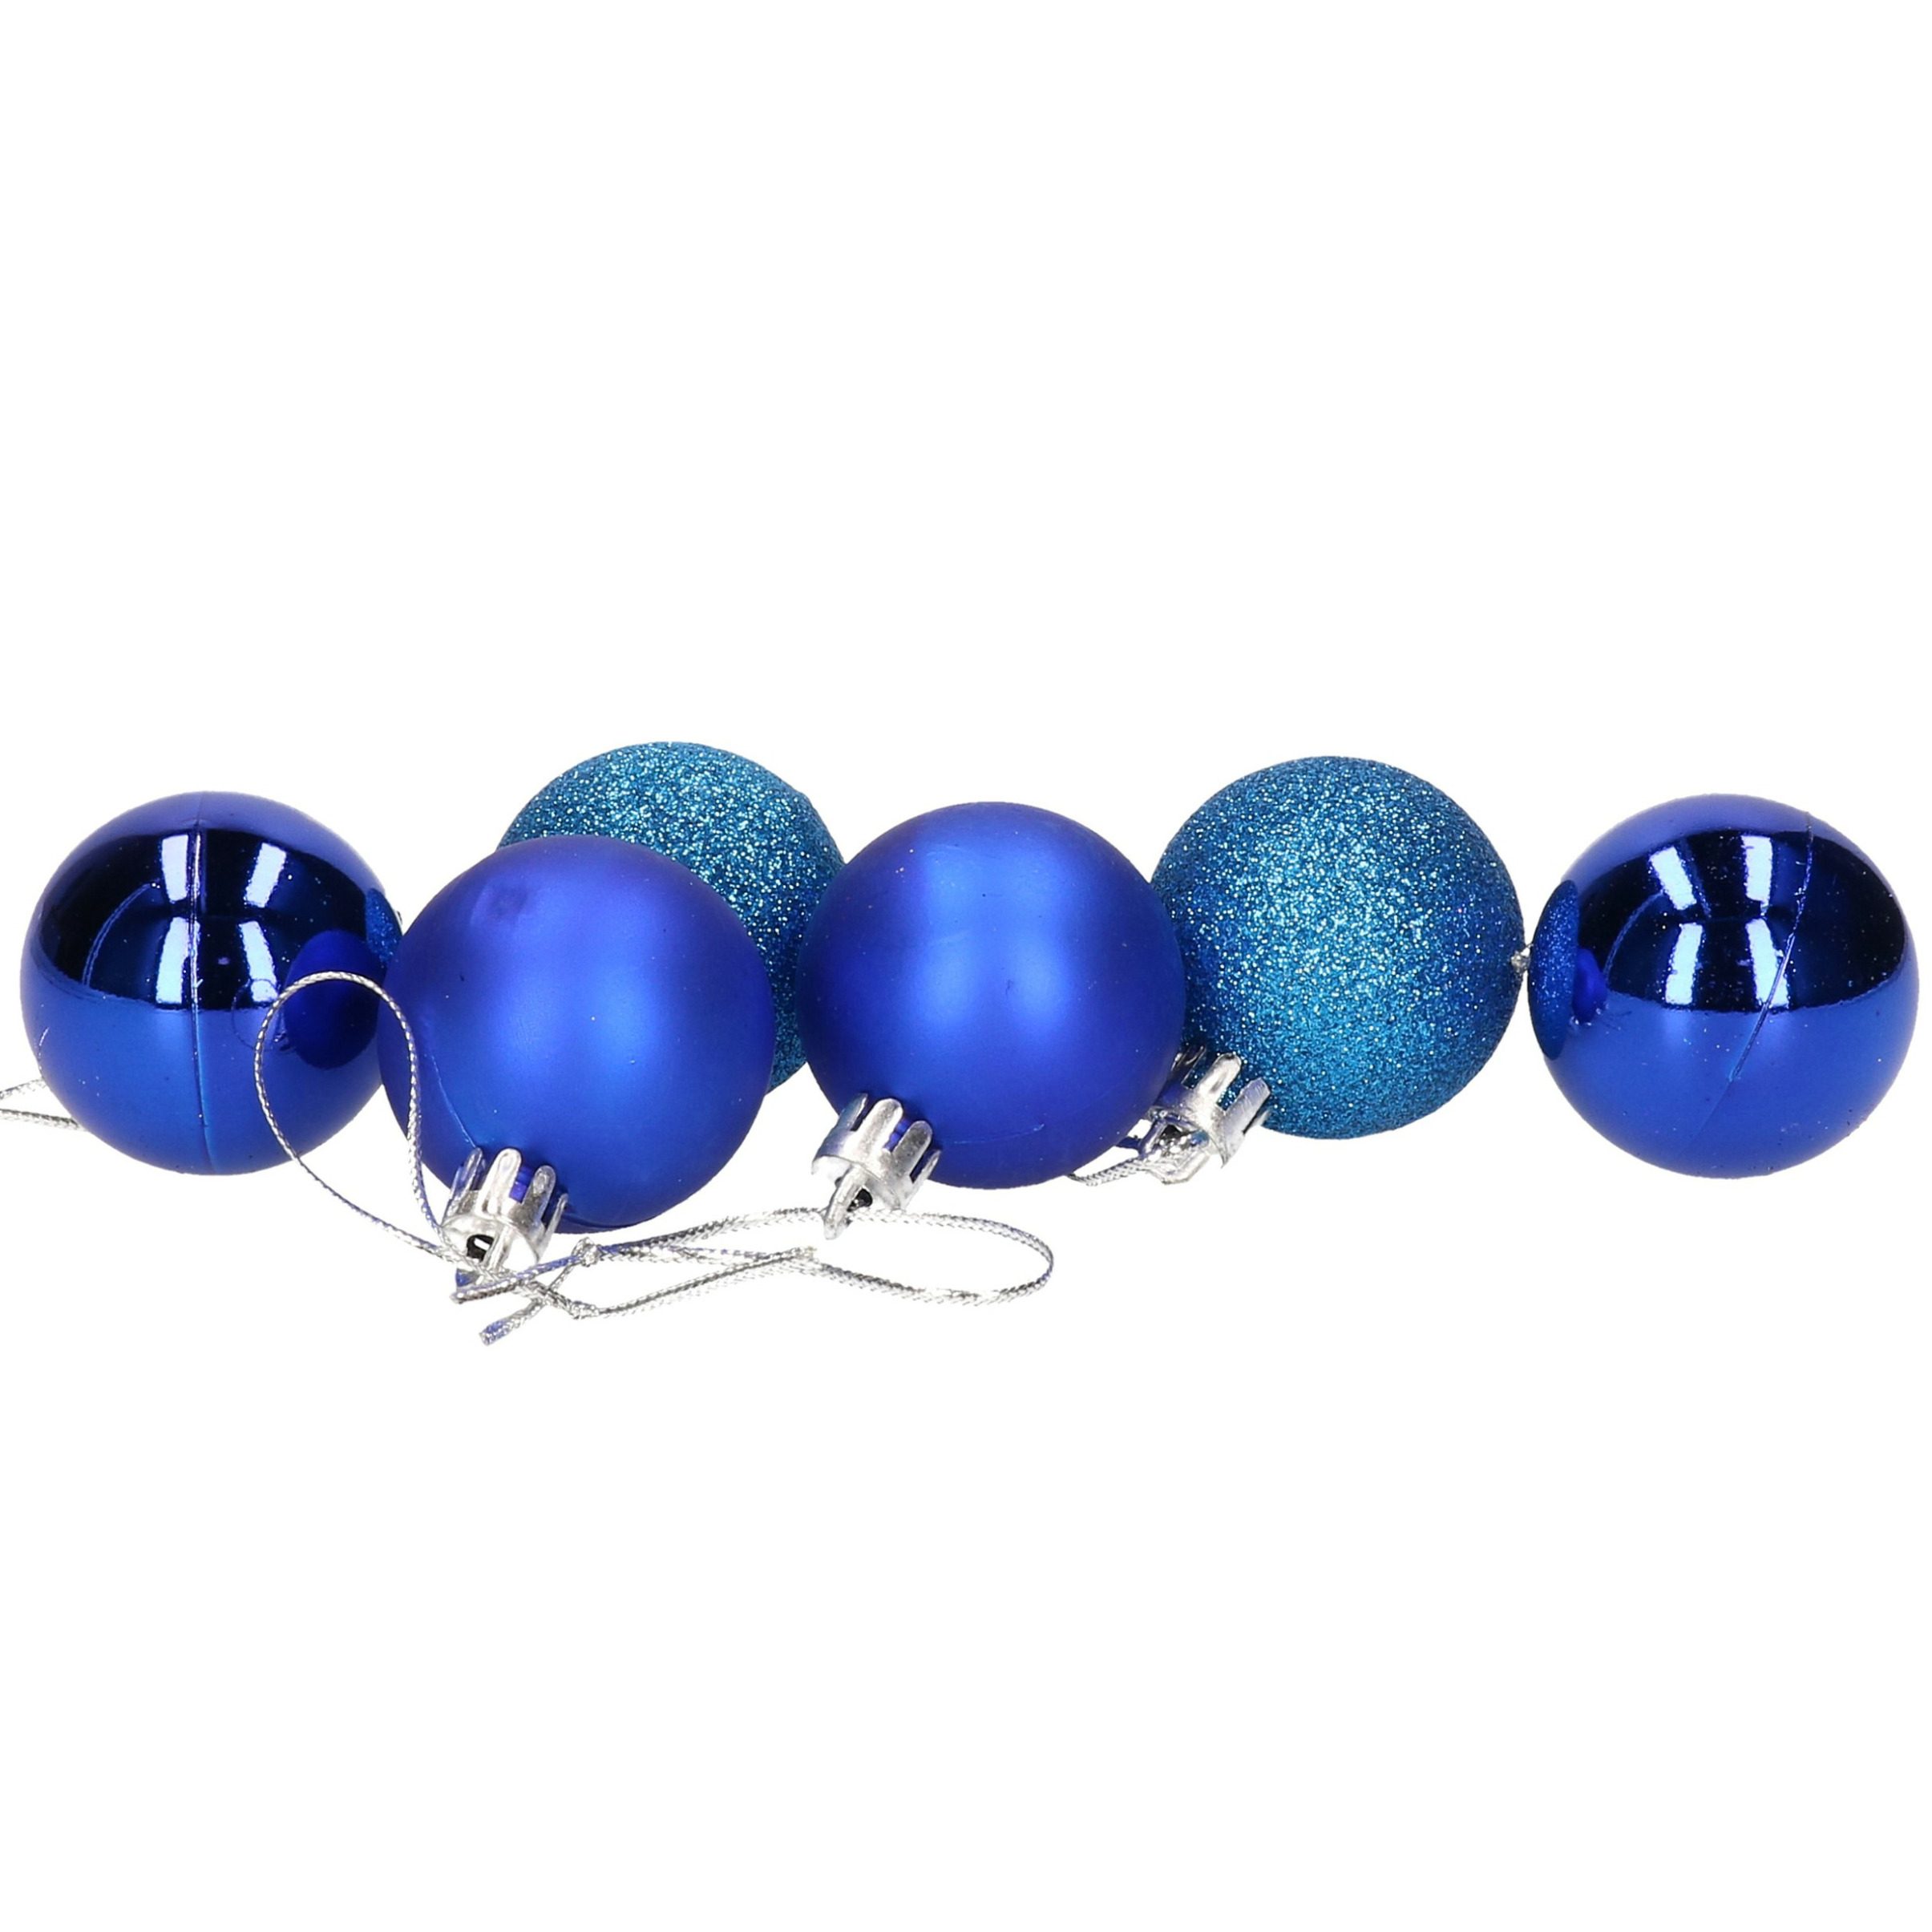 6x stuks kerstballen blauw mix van mat-glans-glitter kunststof 4 cm